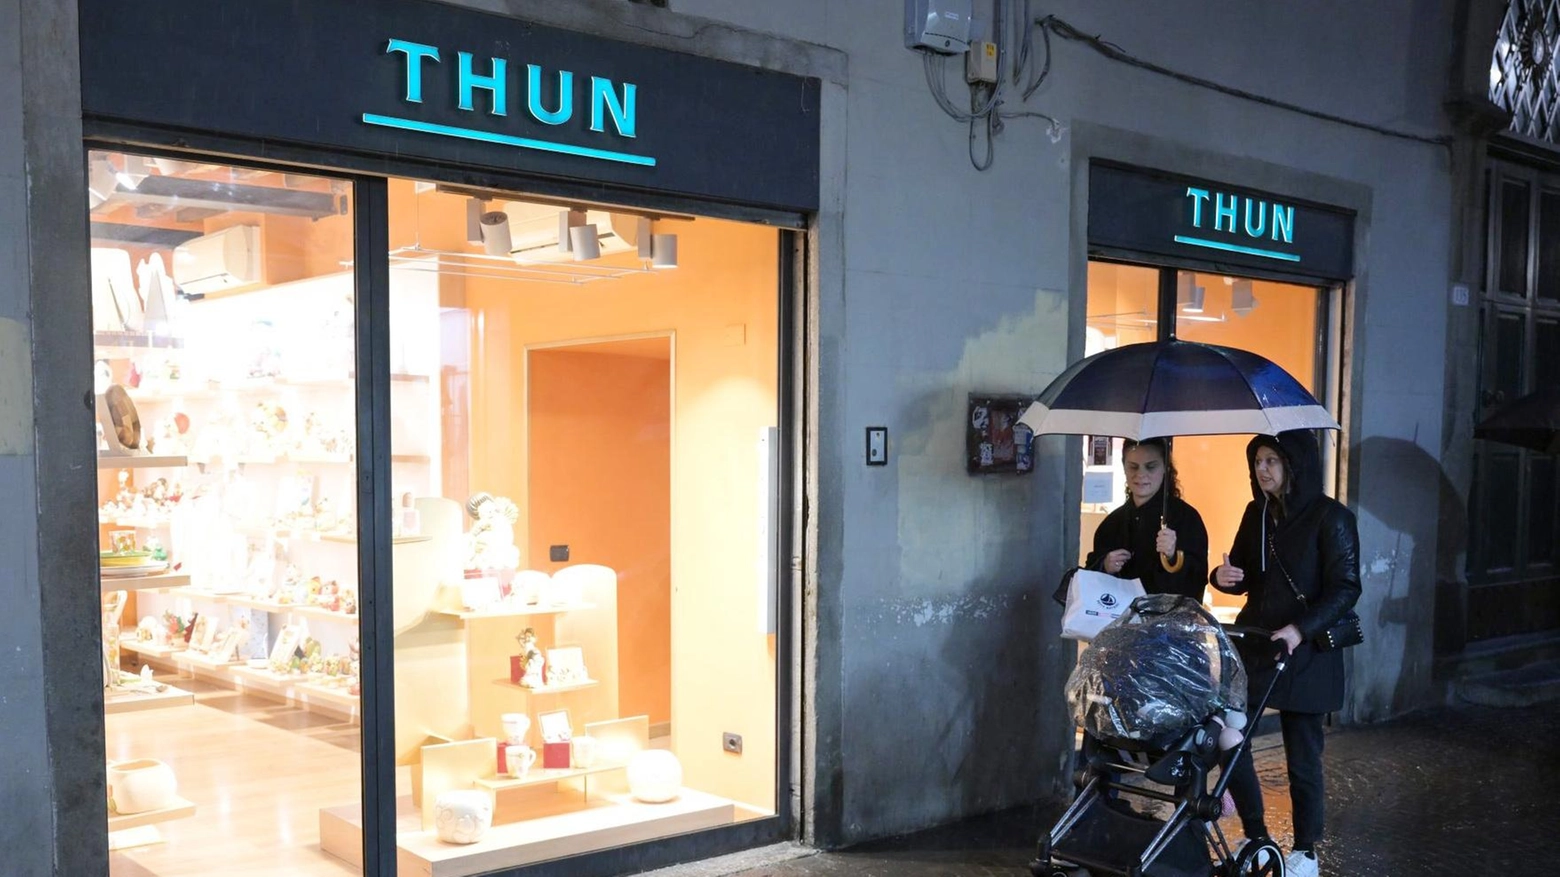 La “Thun“ chiude il negozio in Fillungo. Appello del sindacato alle istituzioni